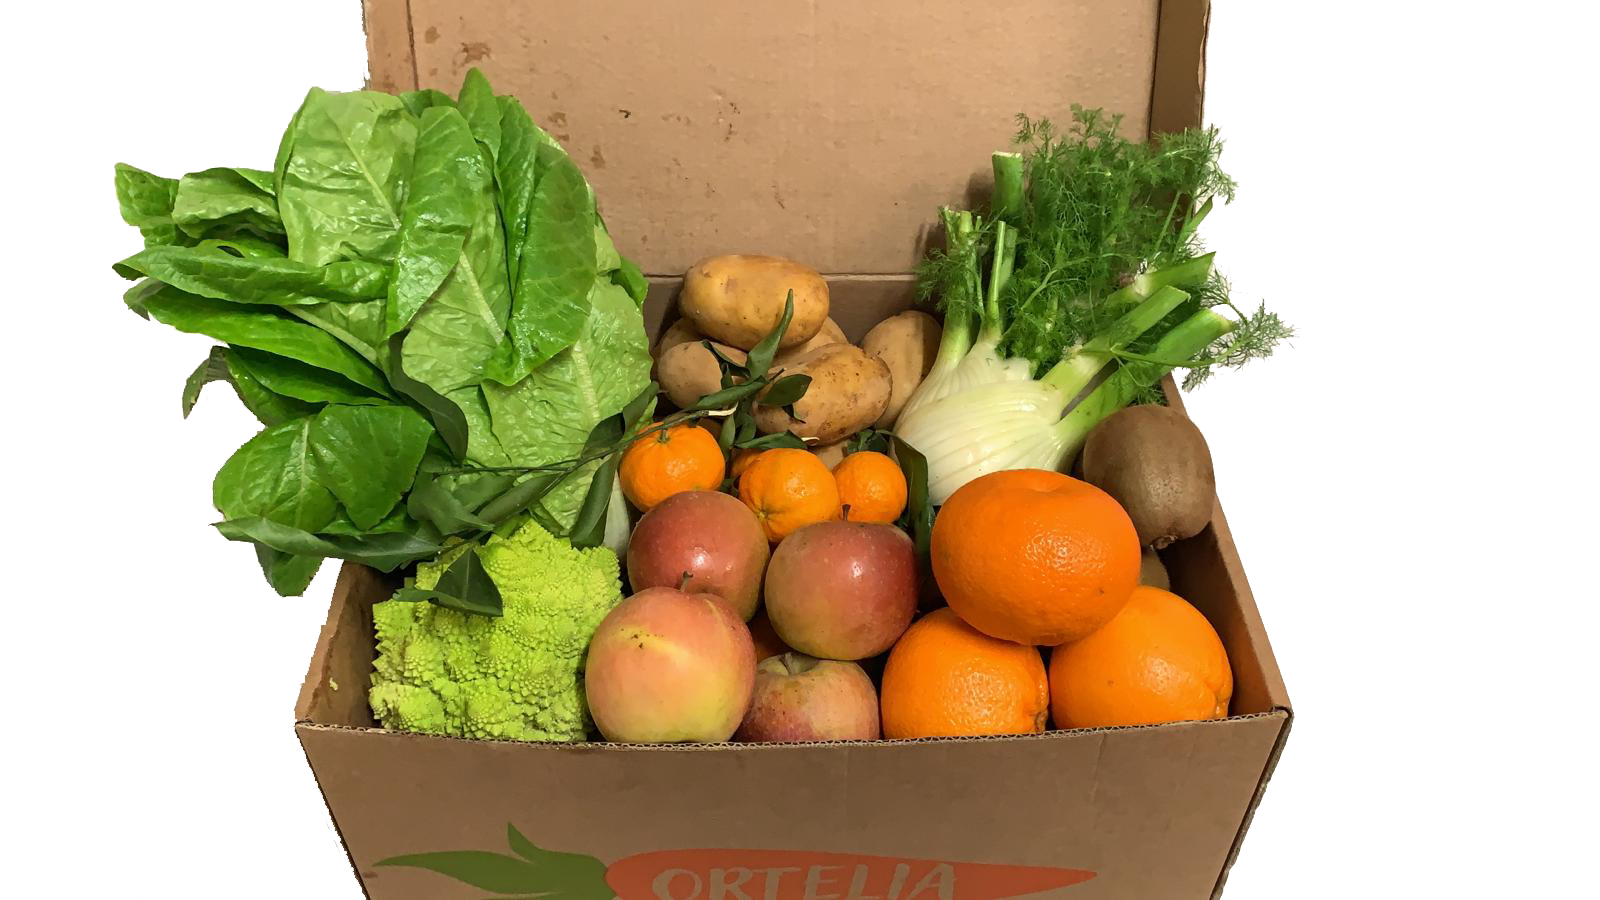 Ortelia Roma | Delivery di Frutta e Verdura a Domicilio - La Box Della Settimana 24/29 Febbraio 2020